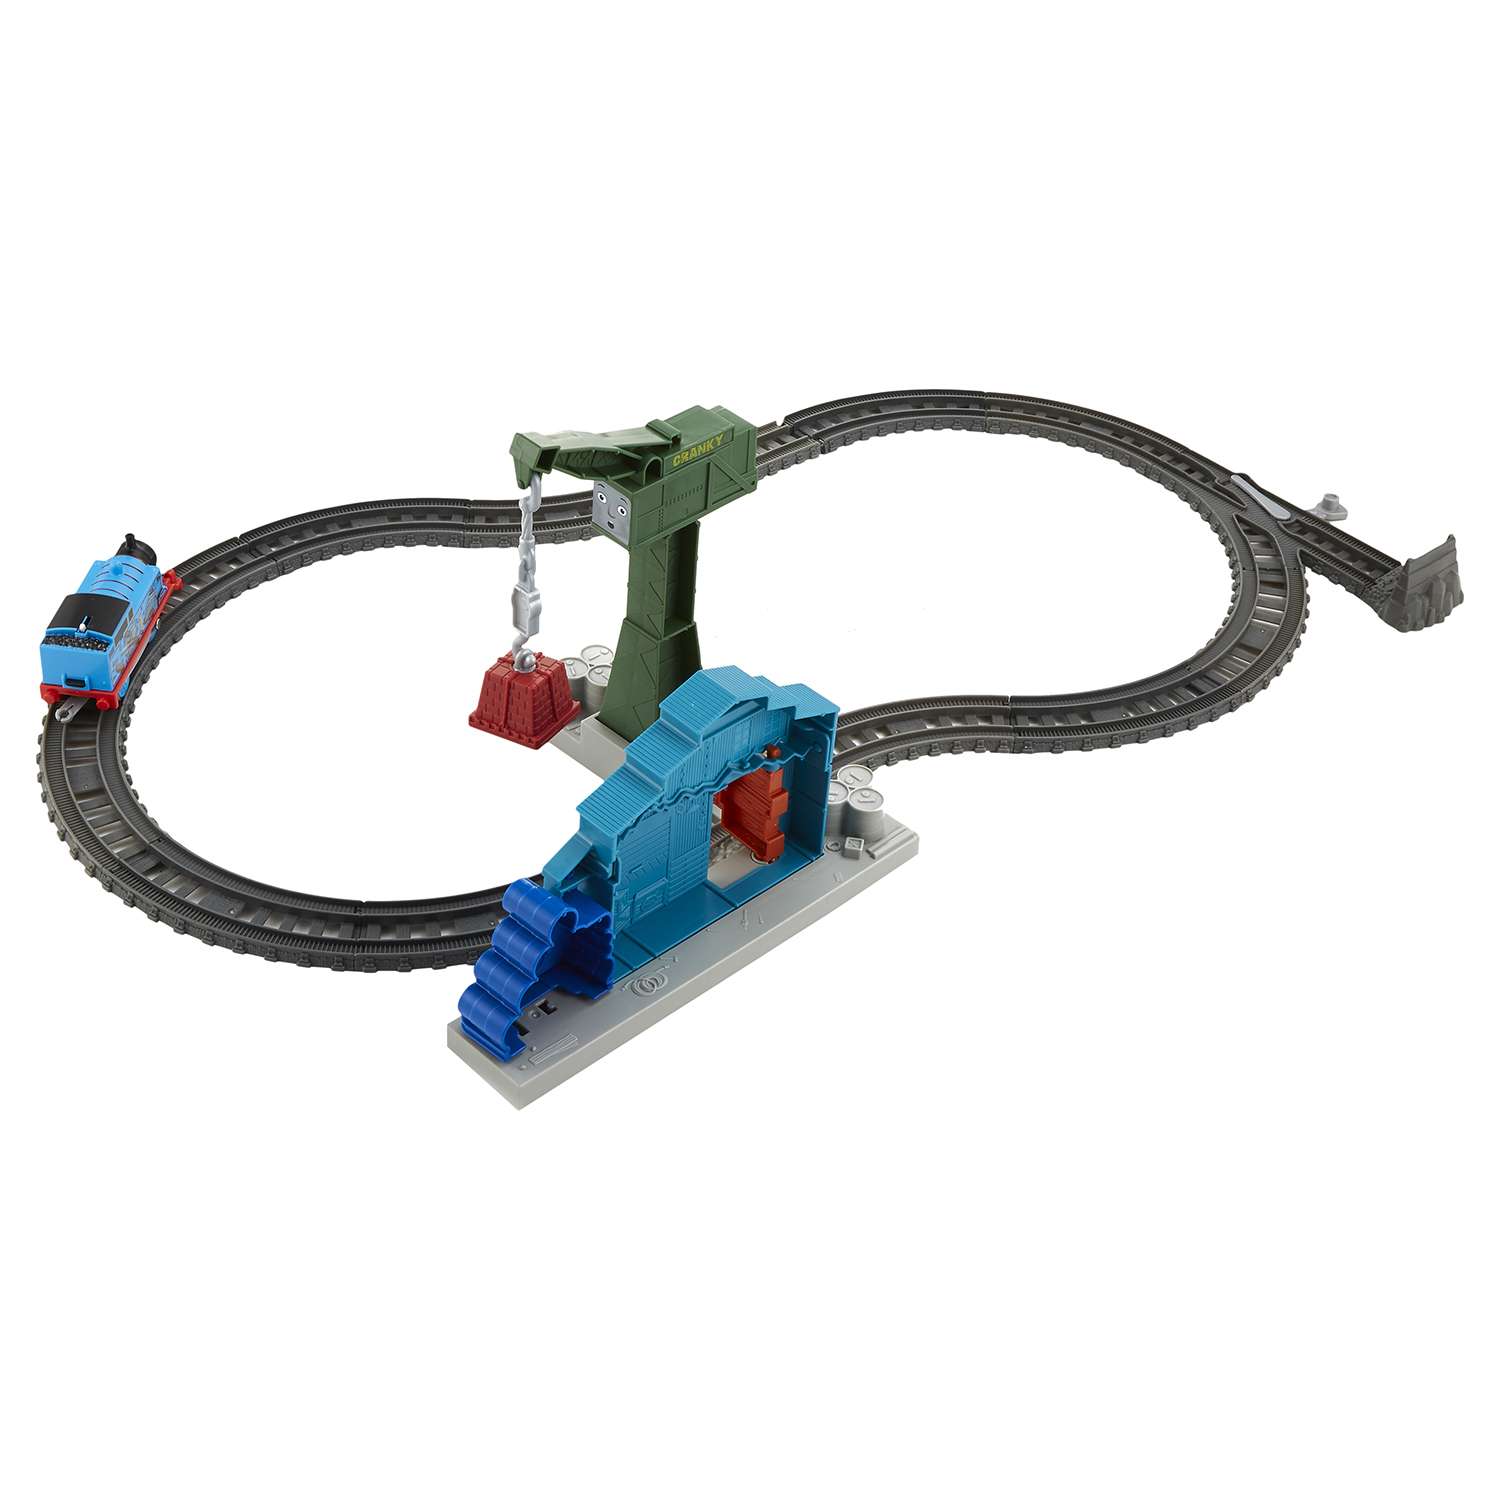 Игровой набор Thomas & Friends с паровозиком Томасом и подъемным краном Крэнки DVF73 - фото 8